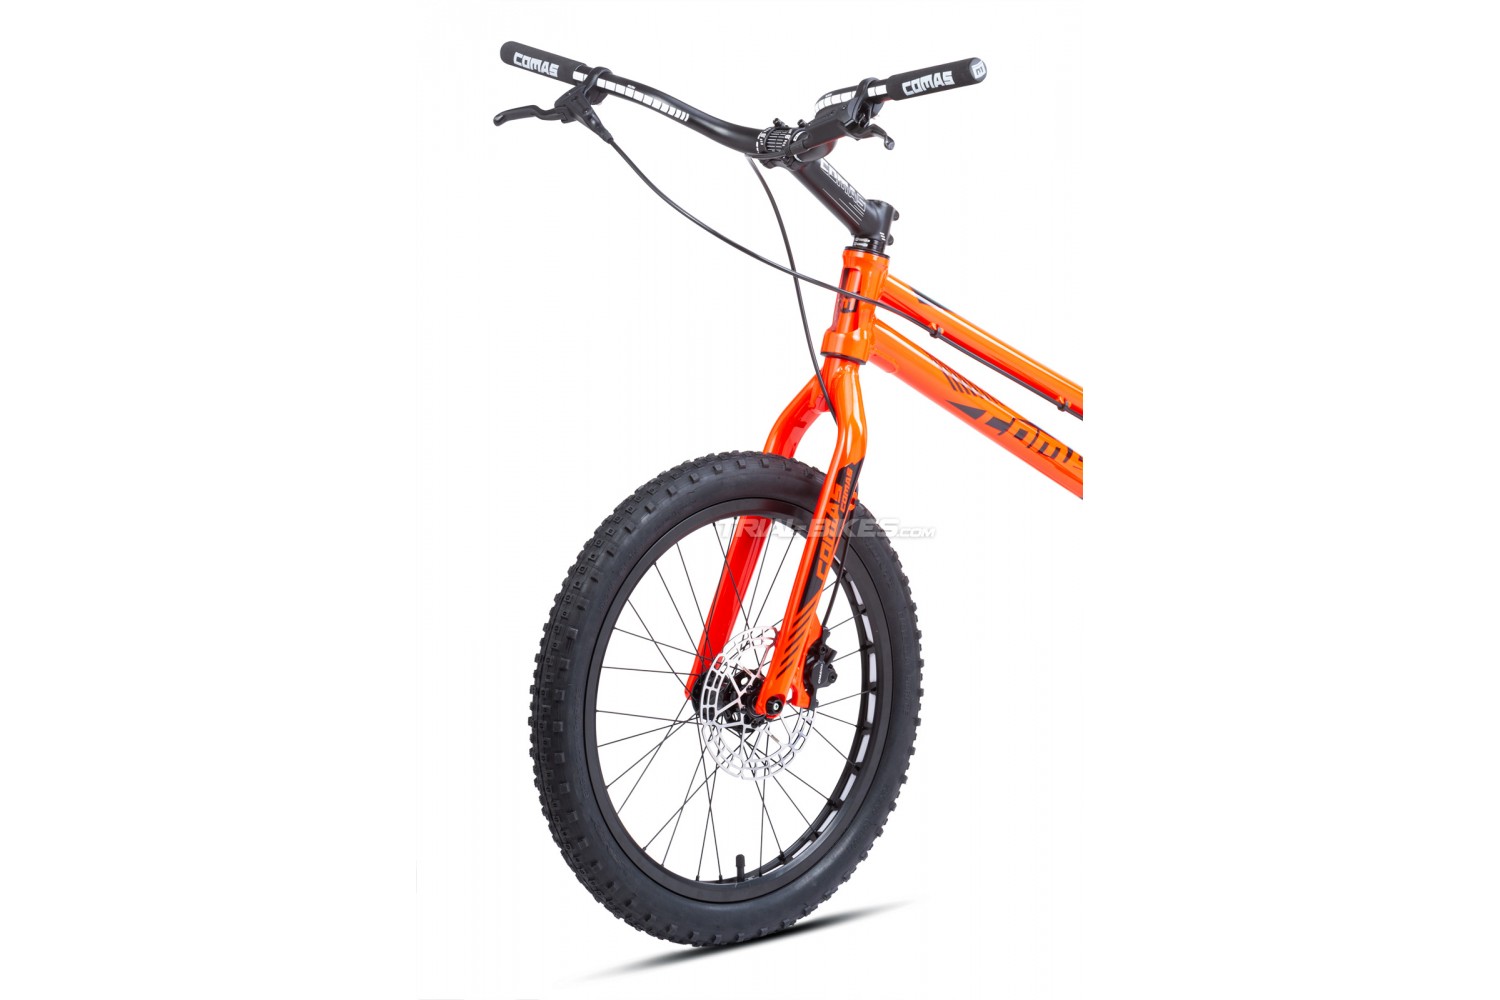 Bicicleta Trial Infantil Comas Entry Pro 920 mm 20 pulgadas frenos  hidráulicos